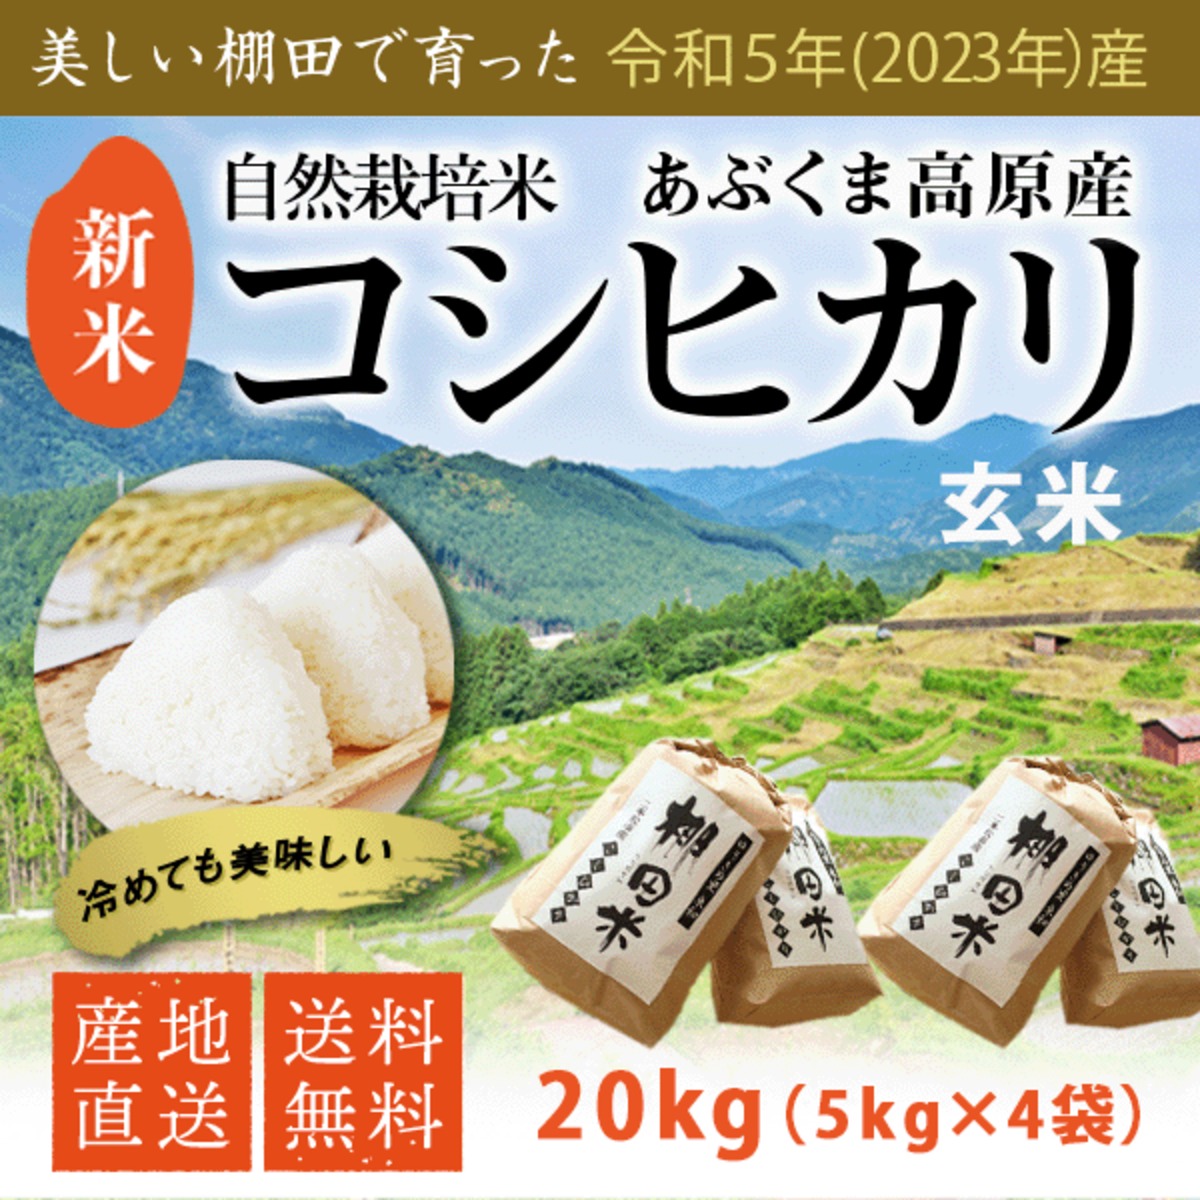 長野2023年 新米 長野産コシヒカリ 白米20kg - 米